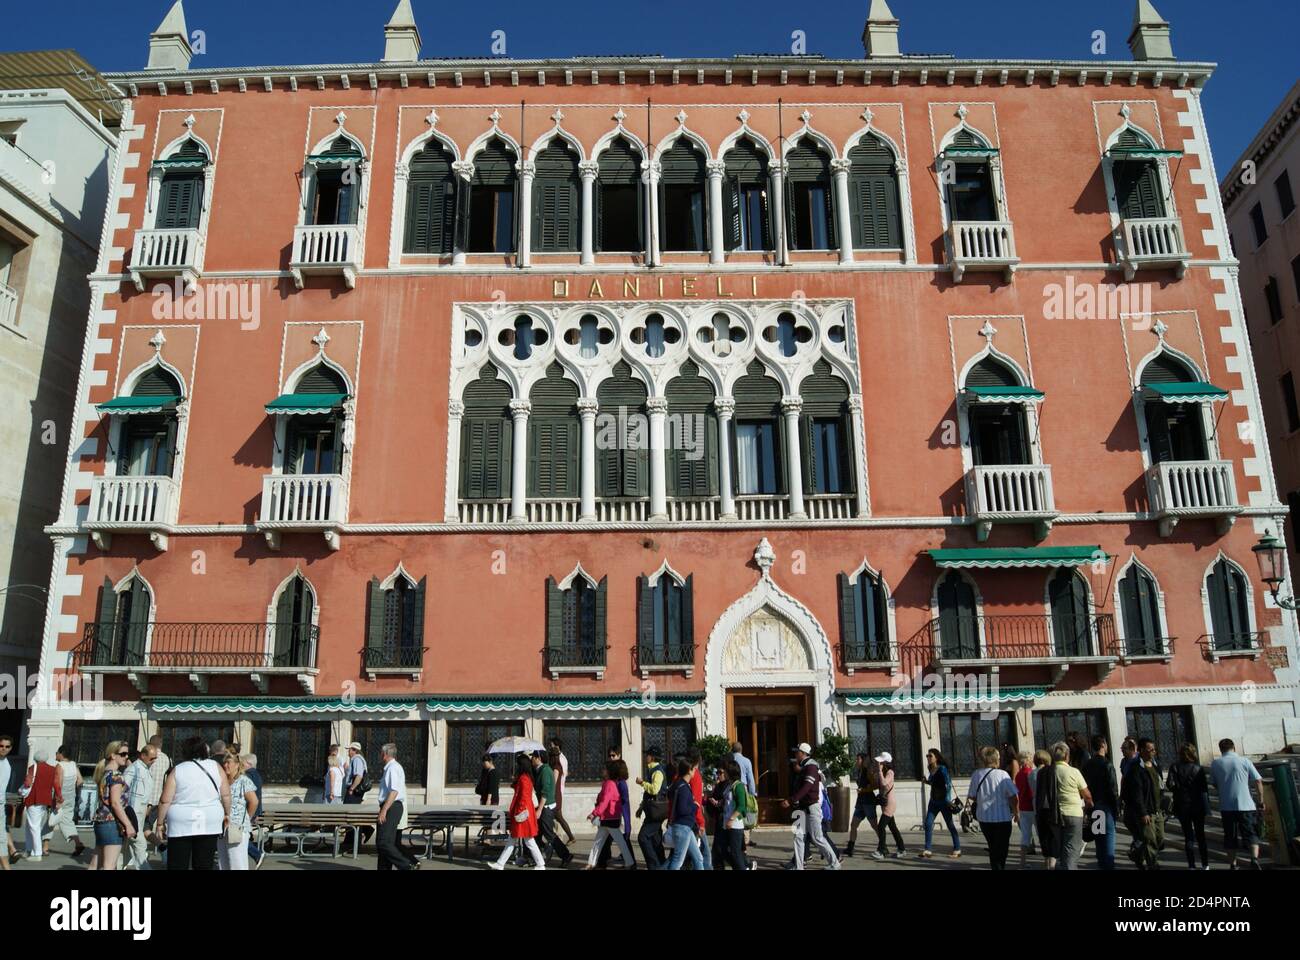 Venise, Italie - septembre 2010 : l'hôtel Danieli est un hôtel de luxe au Riva degli Schiavoni, surplombant la lagune vénitienne Banque D'Images